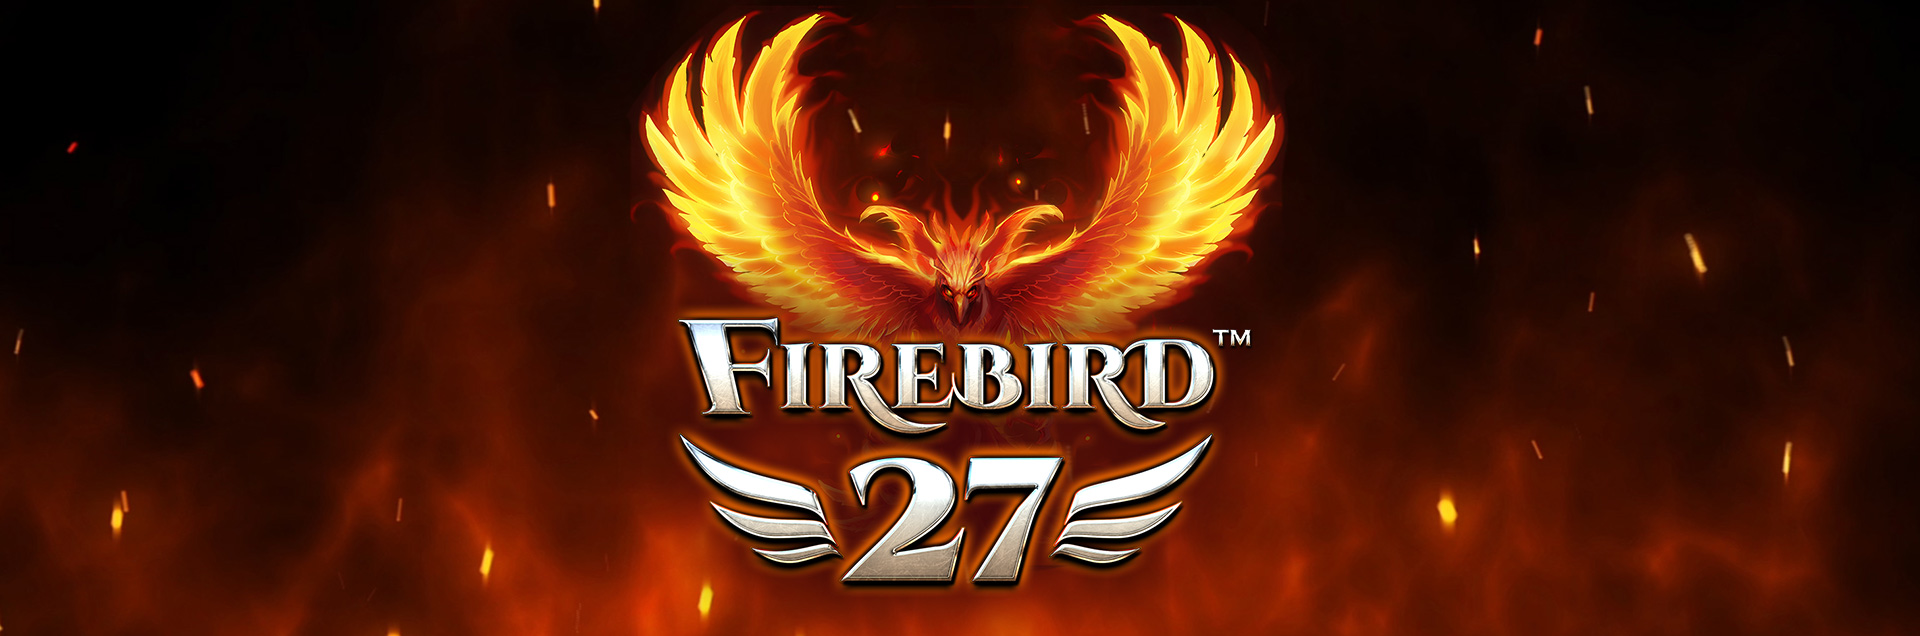 Firebird 27 logo